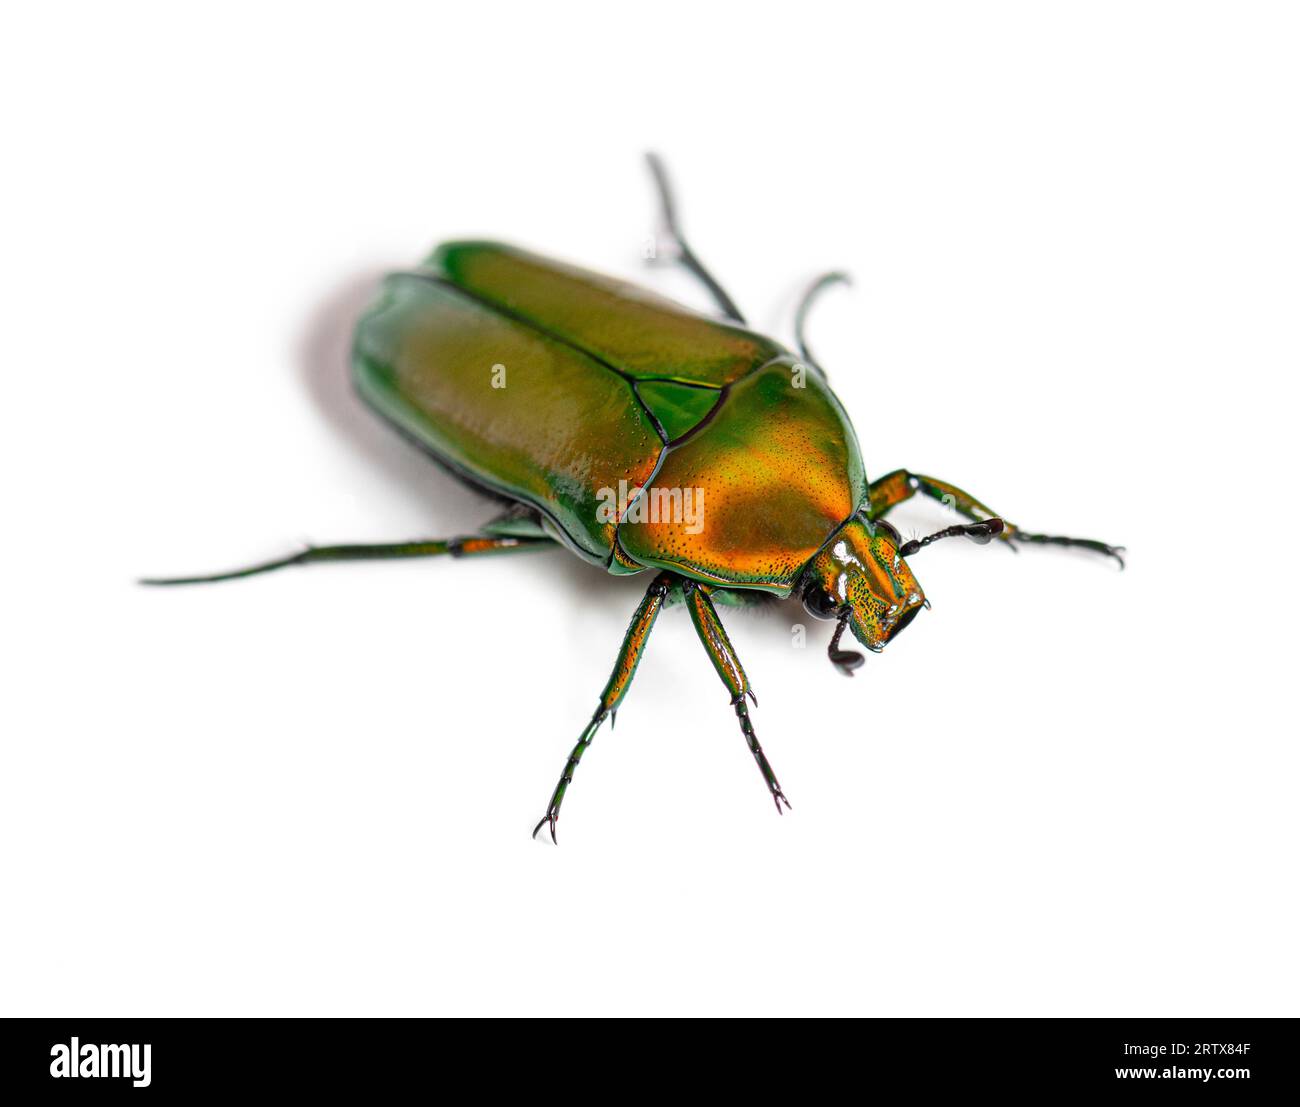 Flower beetle, Chlorocala africana, isolated on white Stock Photo